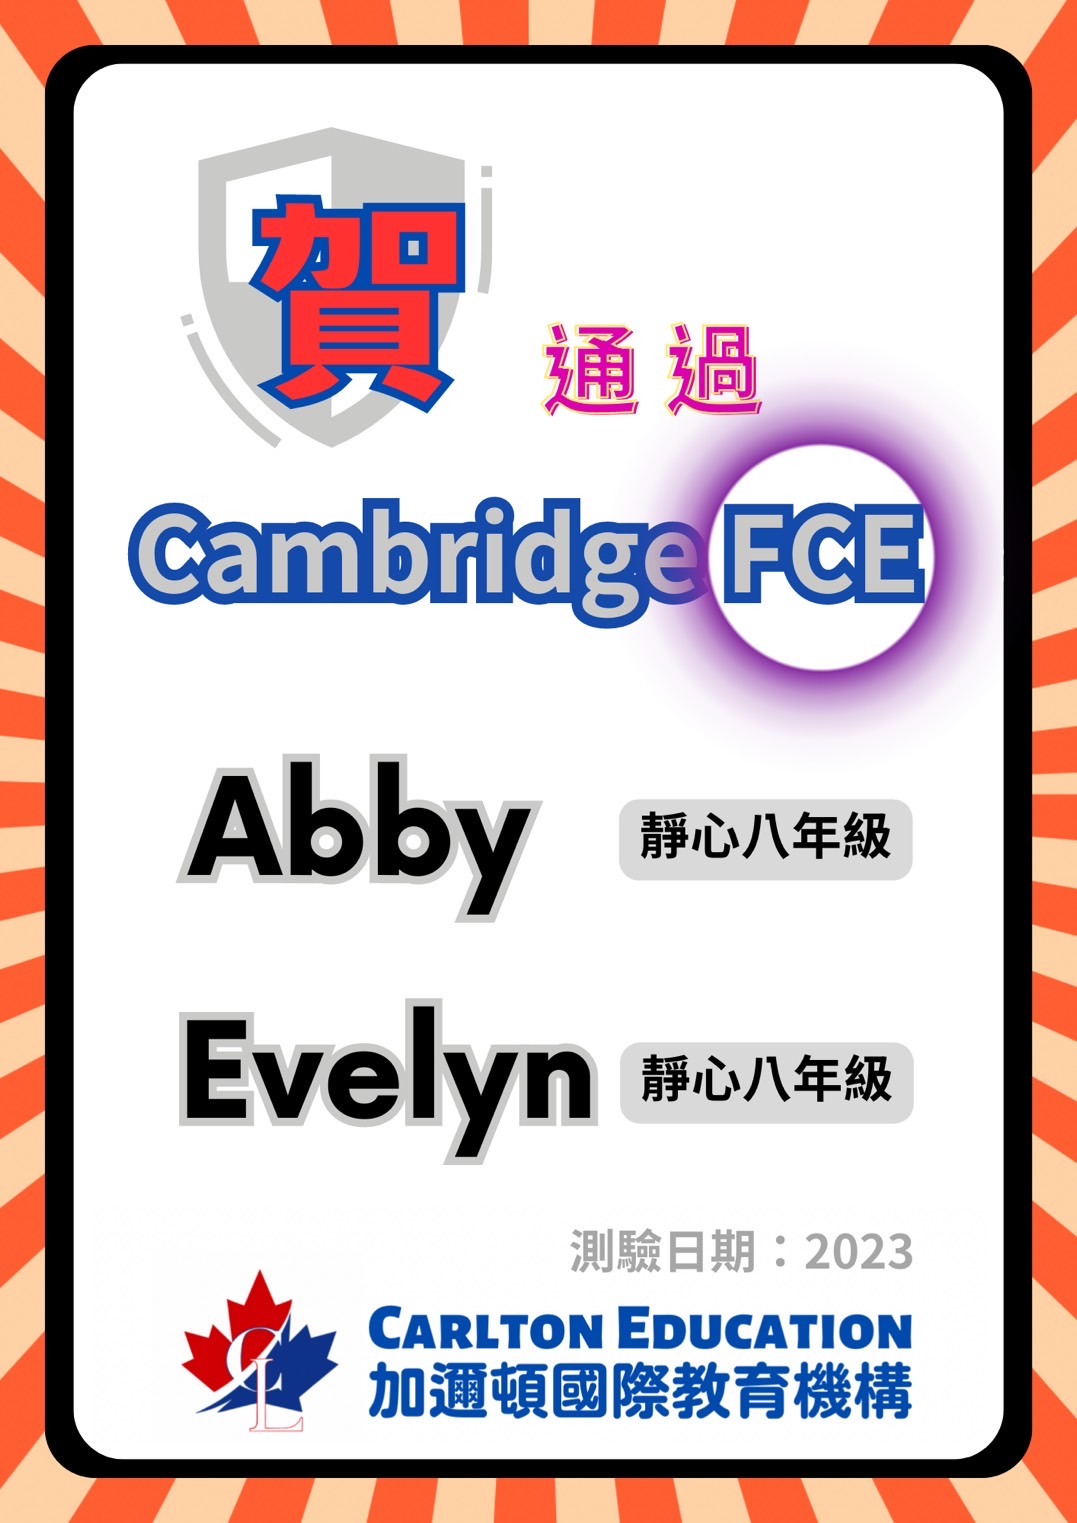 恭喜Abby  Evelyn通過Cambridge 劍橋 FCE